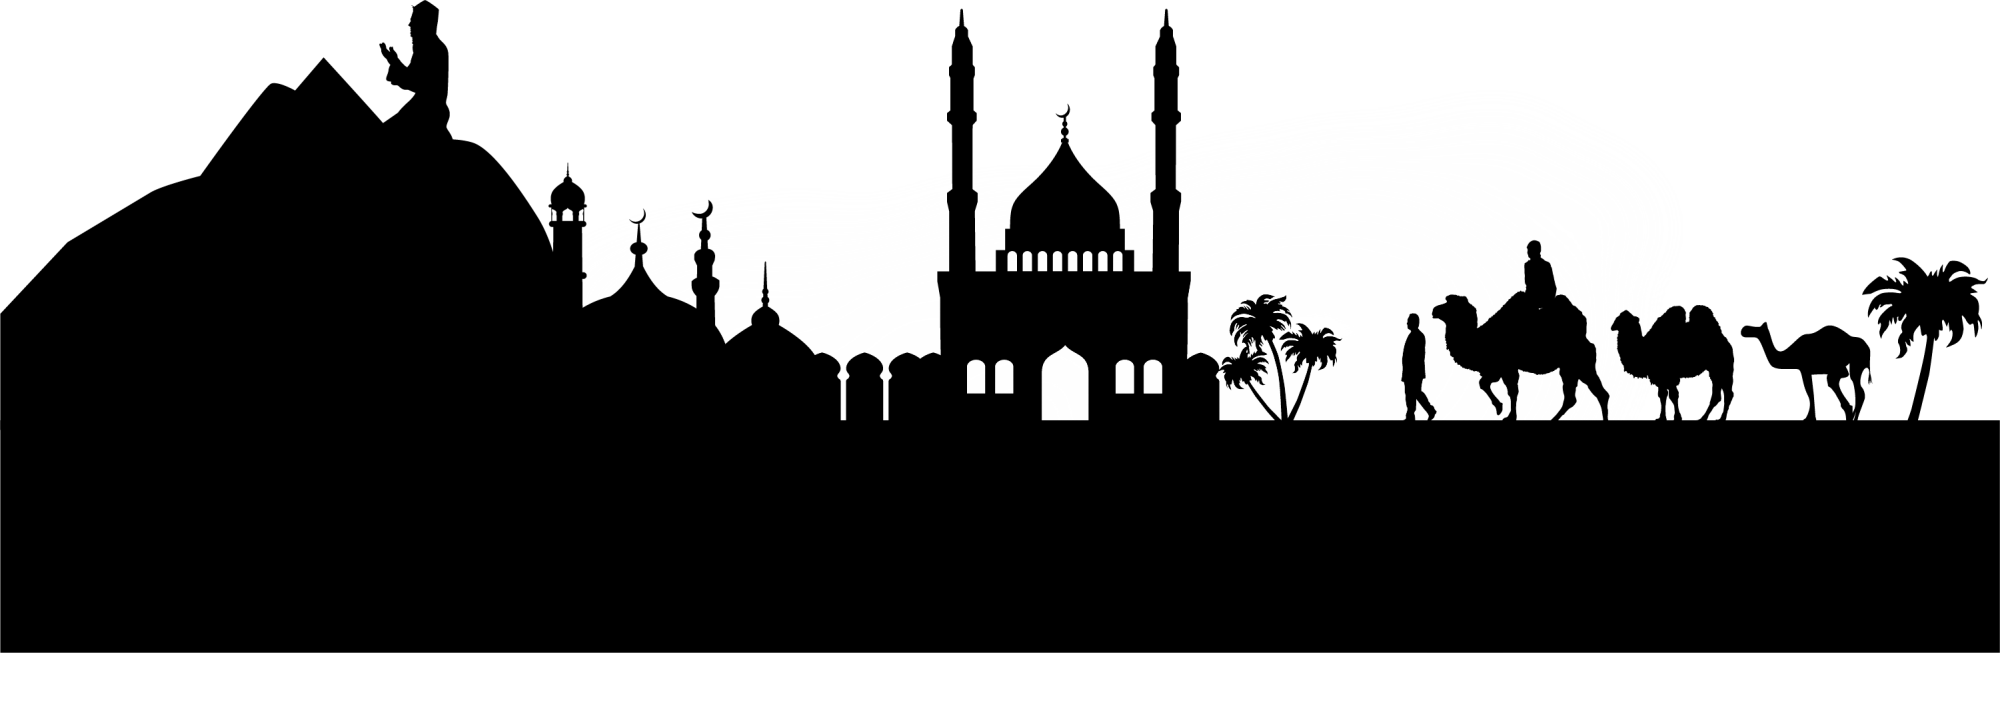 logo masjid, masjid drawing cairo frames illustrations images #31865